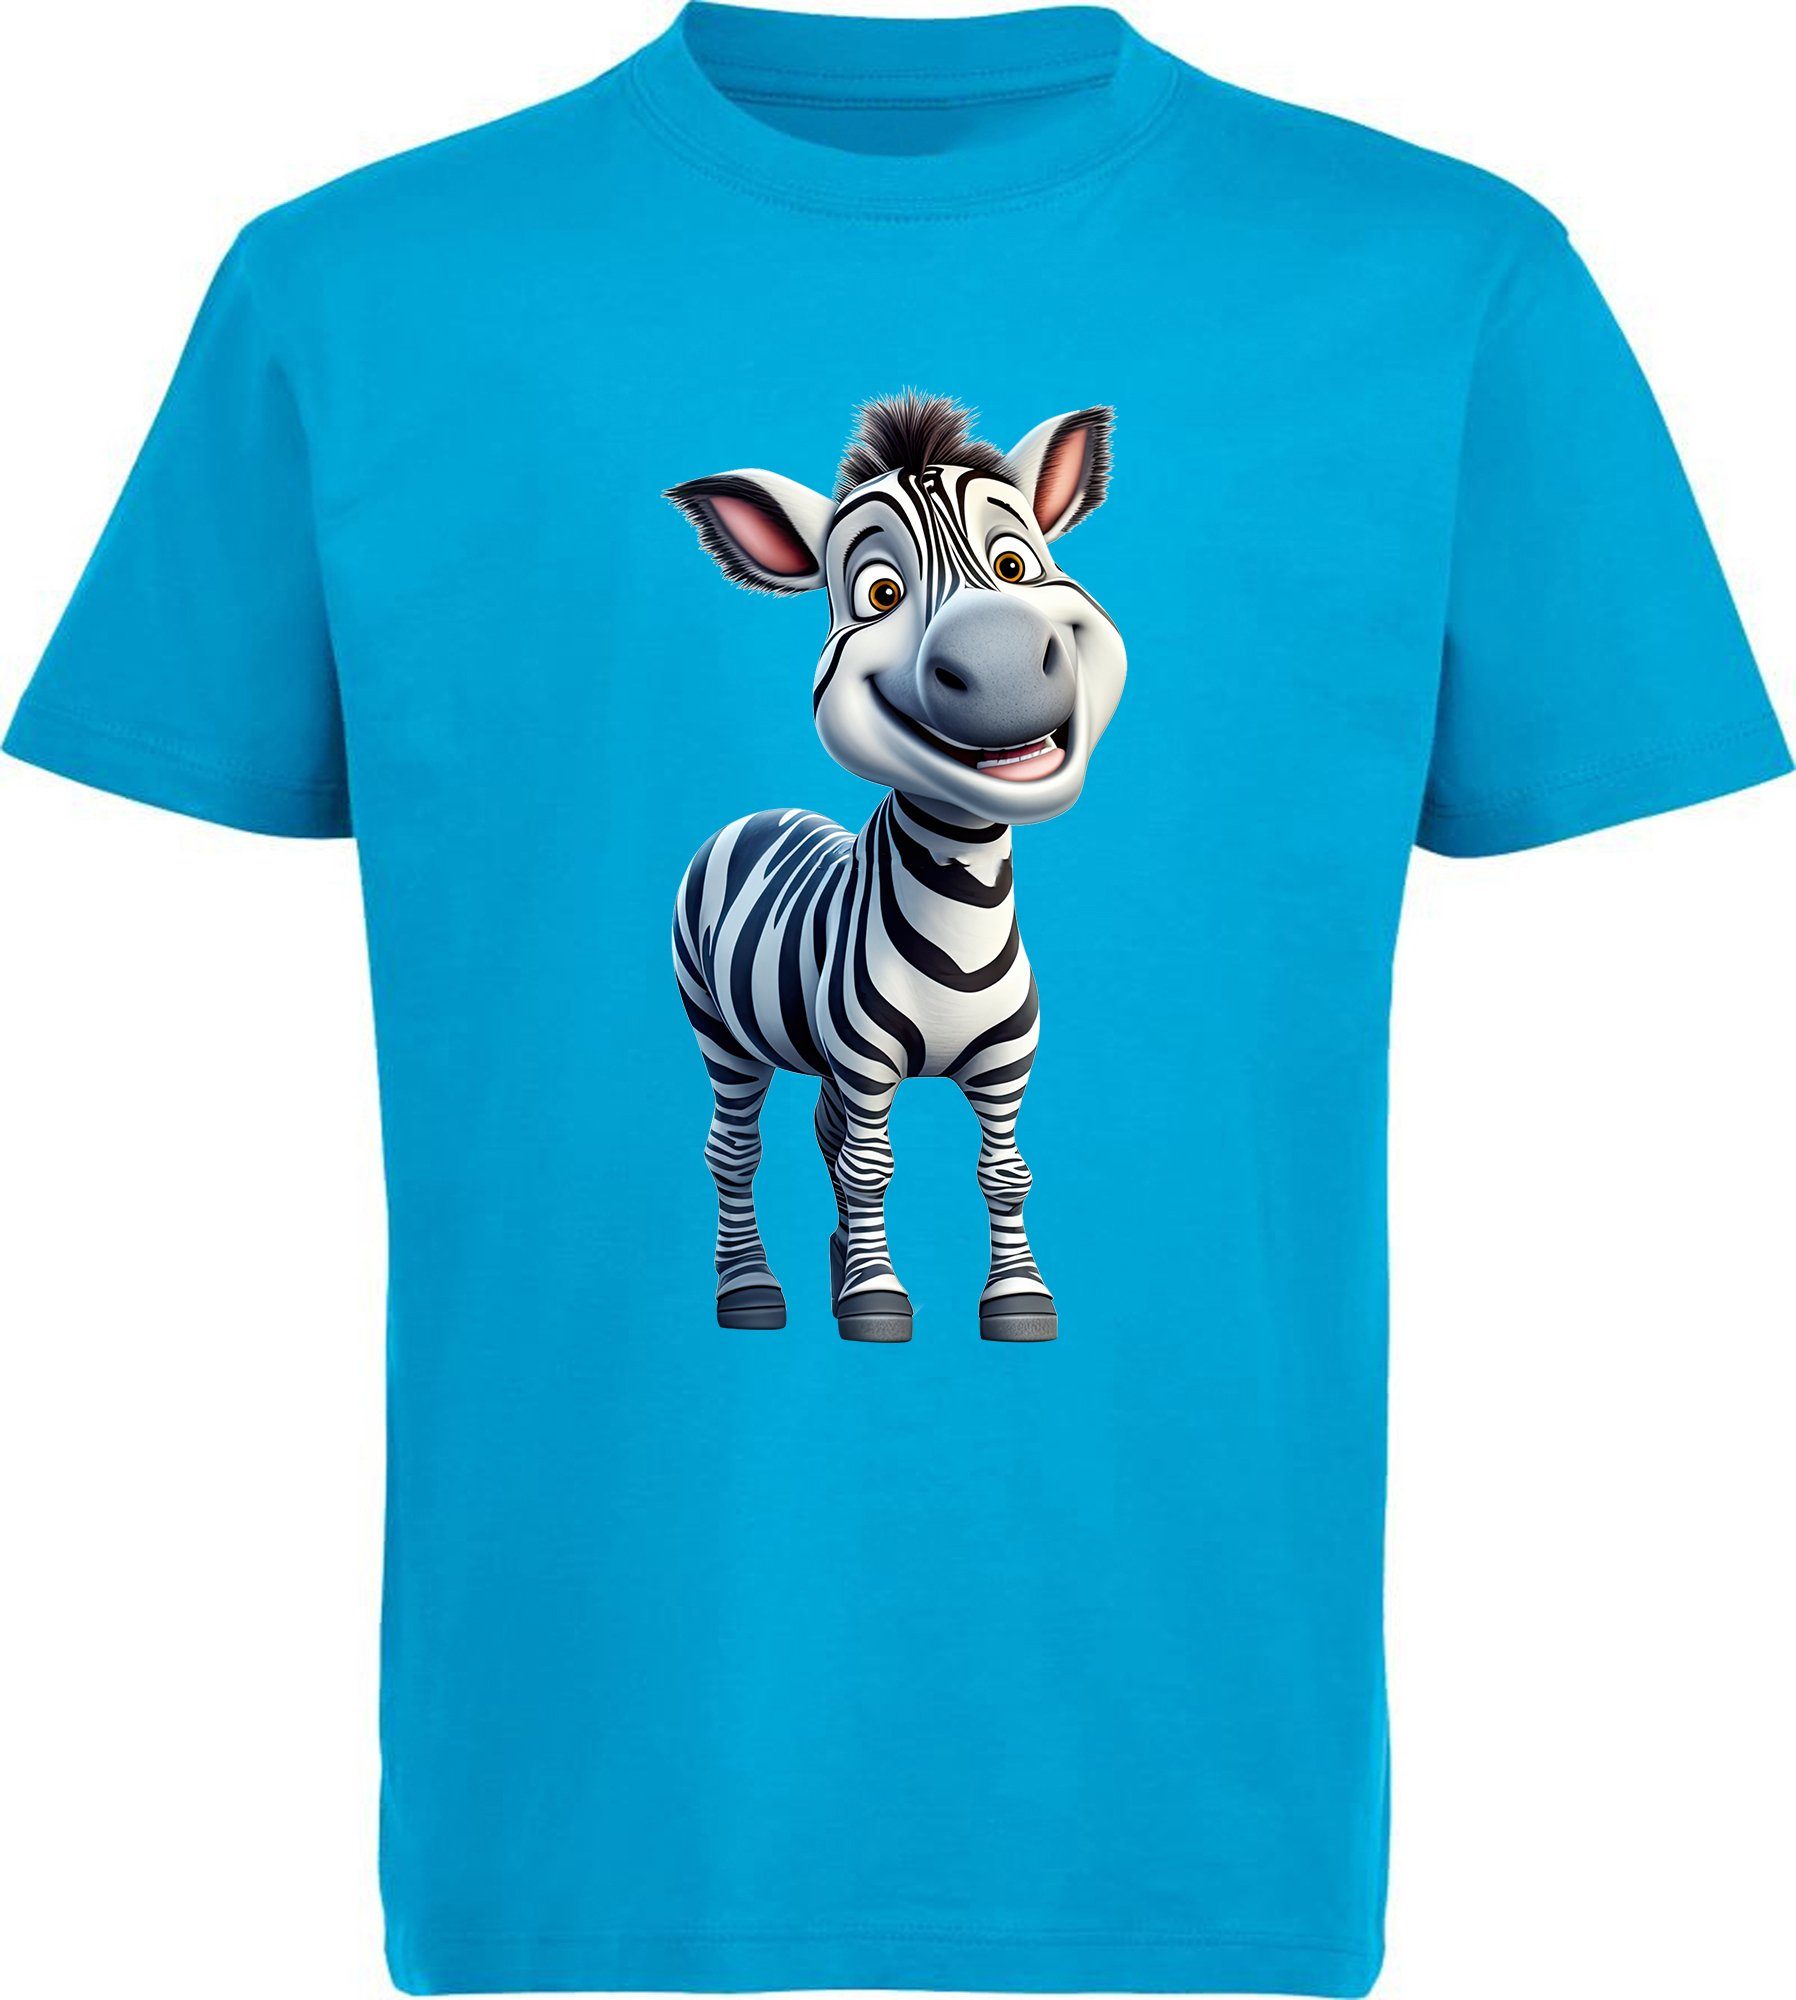 Auch der Versand ist kostenlos! MyDesign24 T-Shirt Kinder Print i280 Baby mit Wildtier Aufdruck, Baumwollshirt bedruckt Shirt aqua Zebra - blau